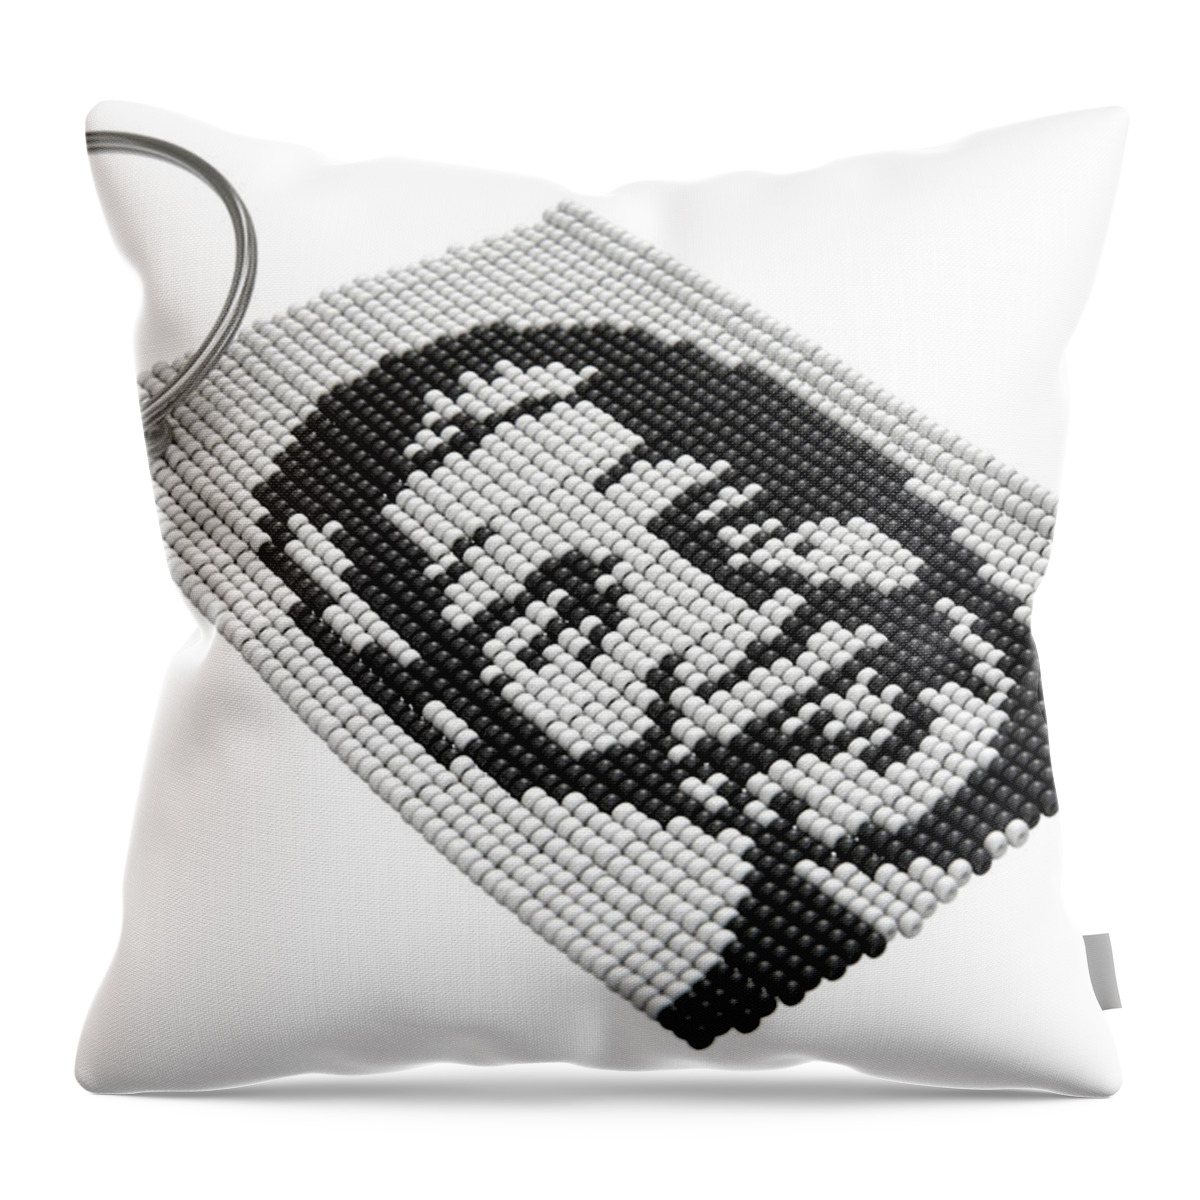 Nelson Mandela Throw Pillow featuring the digital art Zulu Bead Keyring #3 by Allan Swart